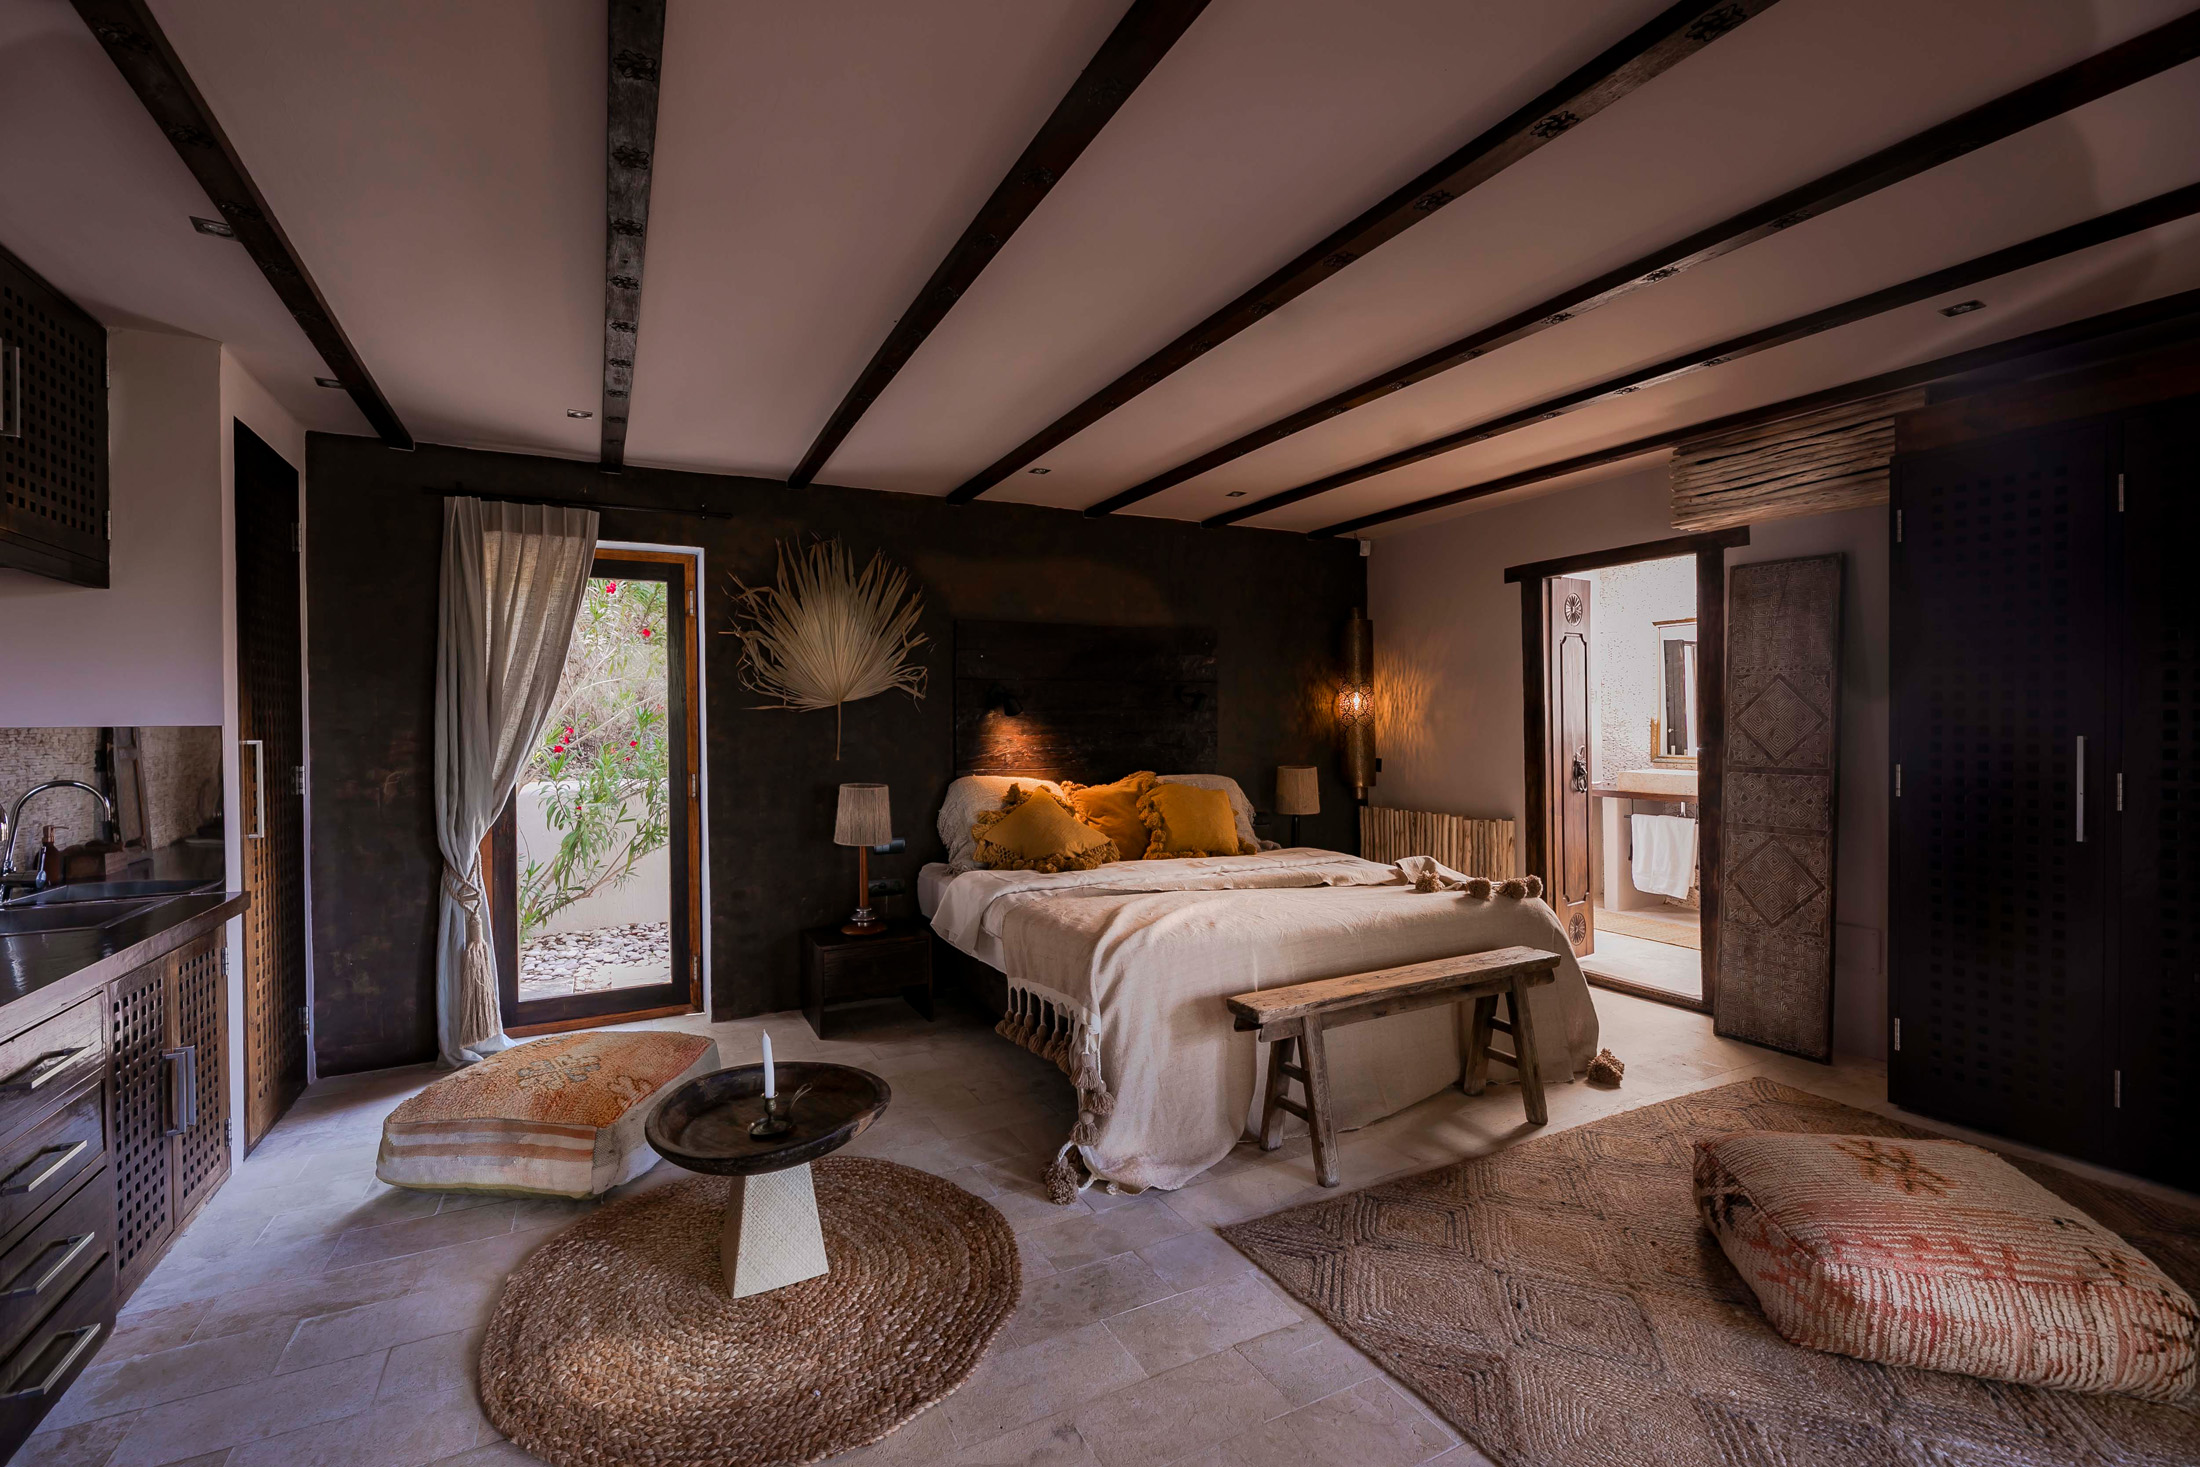 A bedroom of an Ibizan finca